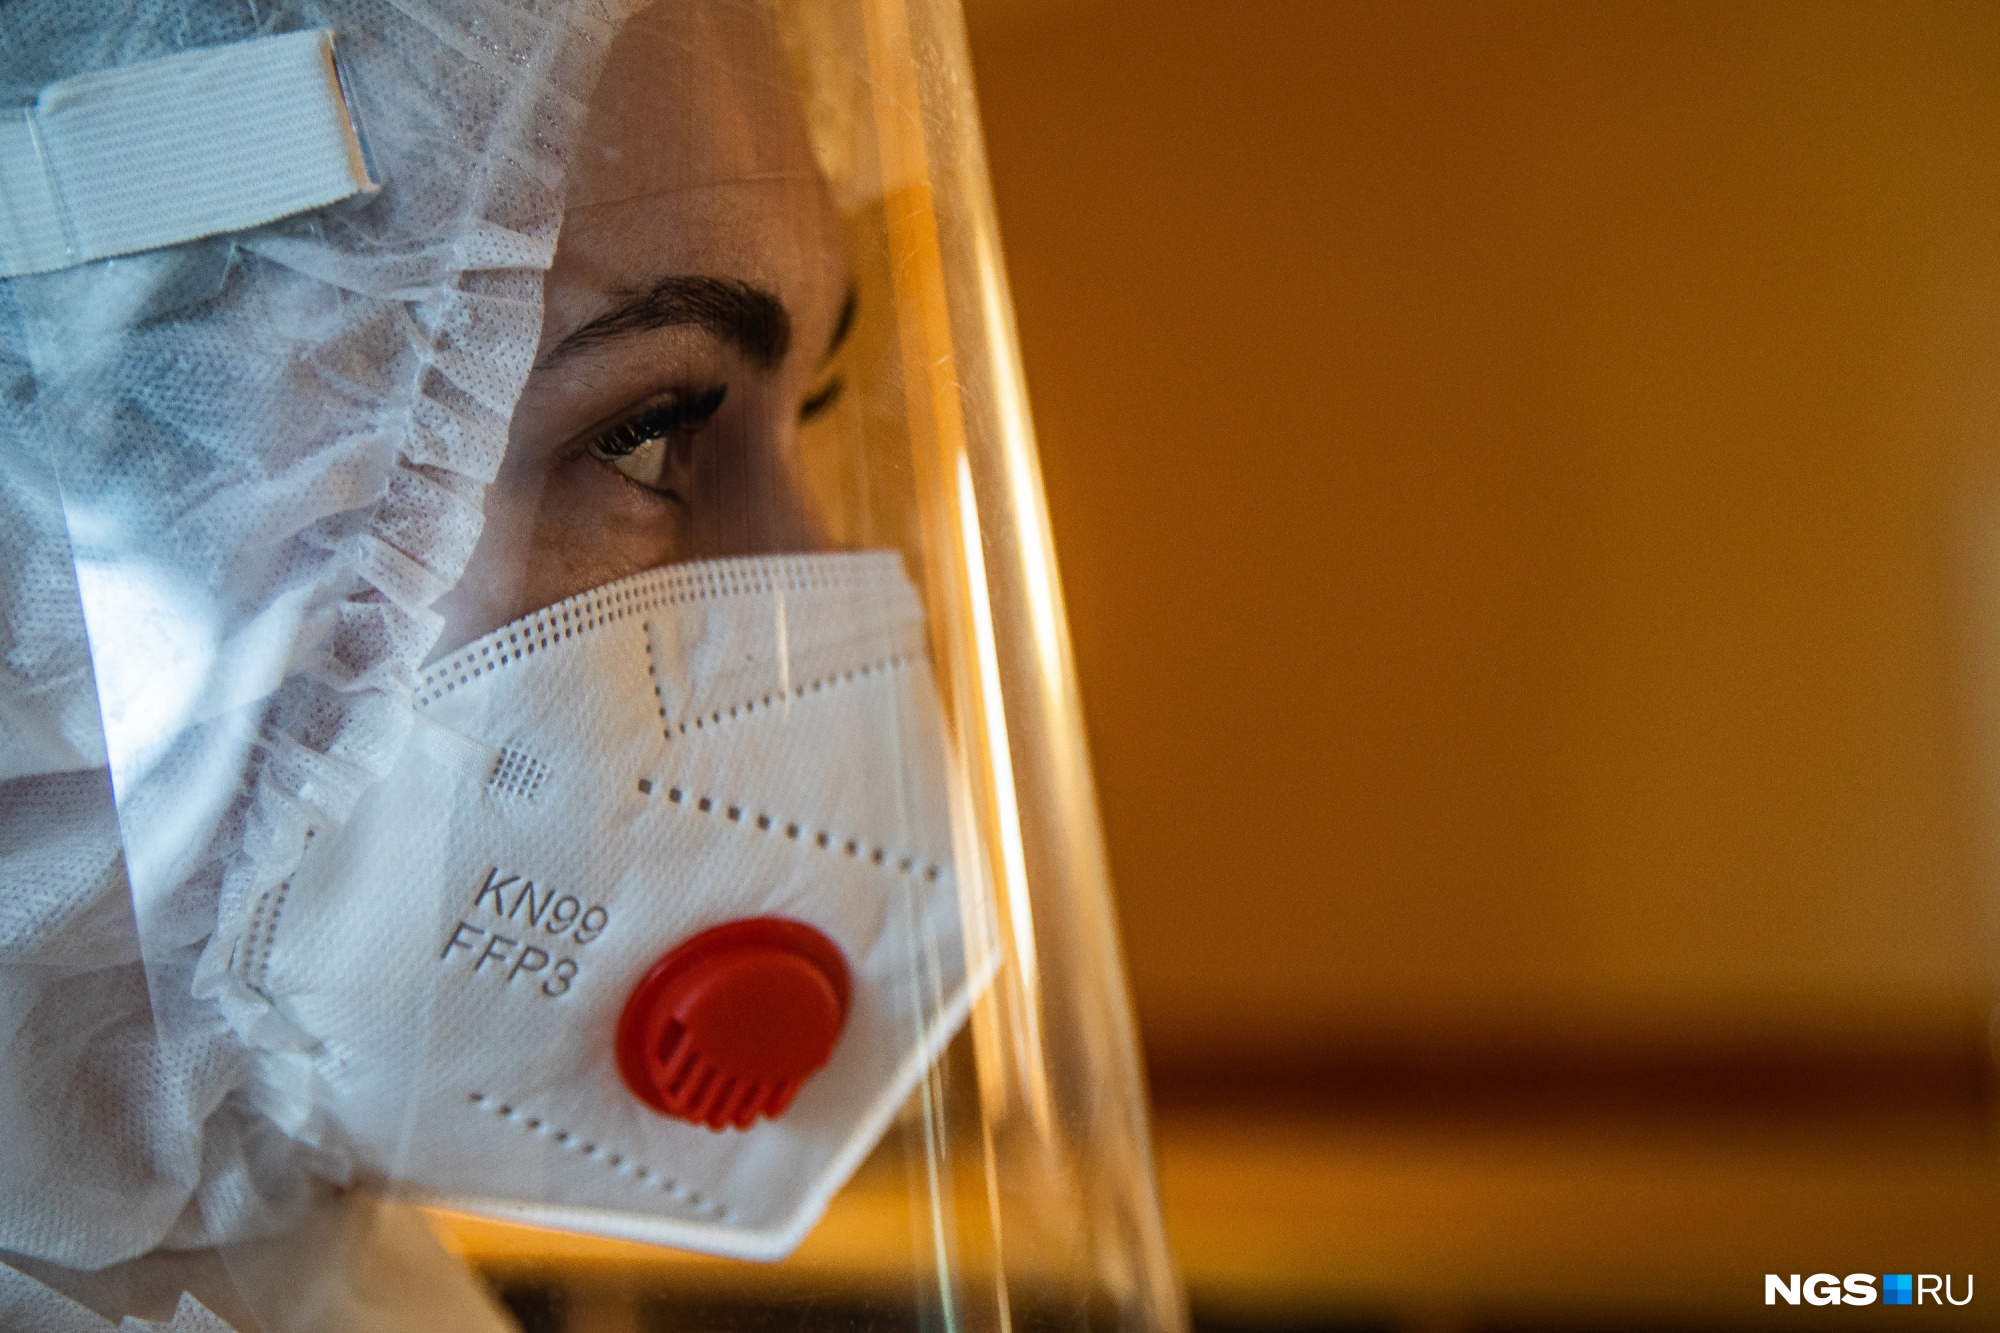 Вакцинированные люди тоже болеют, им нужно носить маски, чтобы снизить дозу вирусной нагрузки от инфицированных людей, считает Сергей Нетёсов